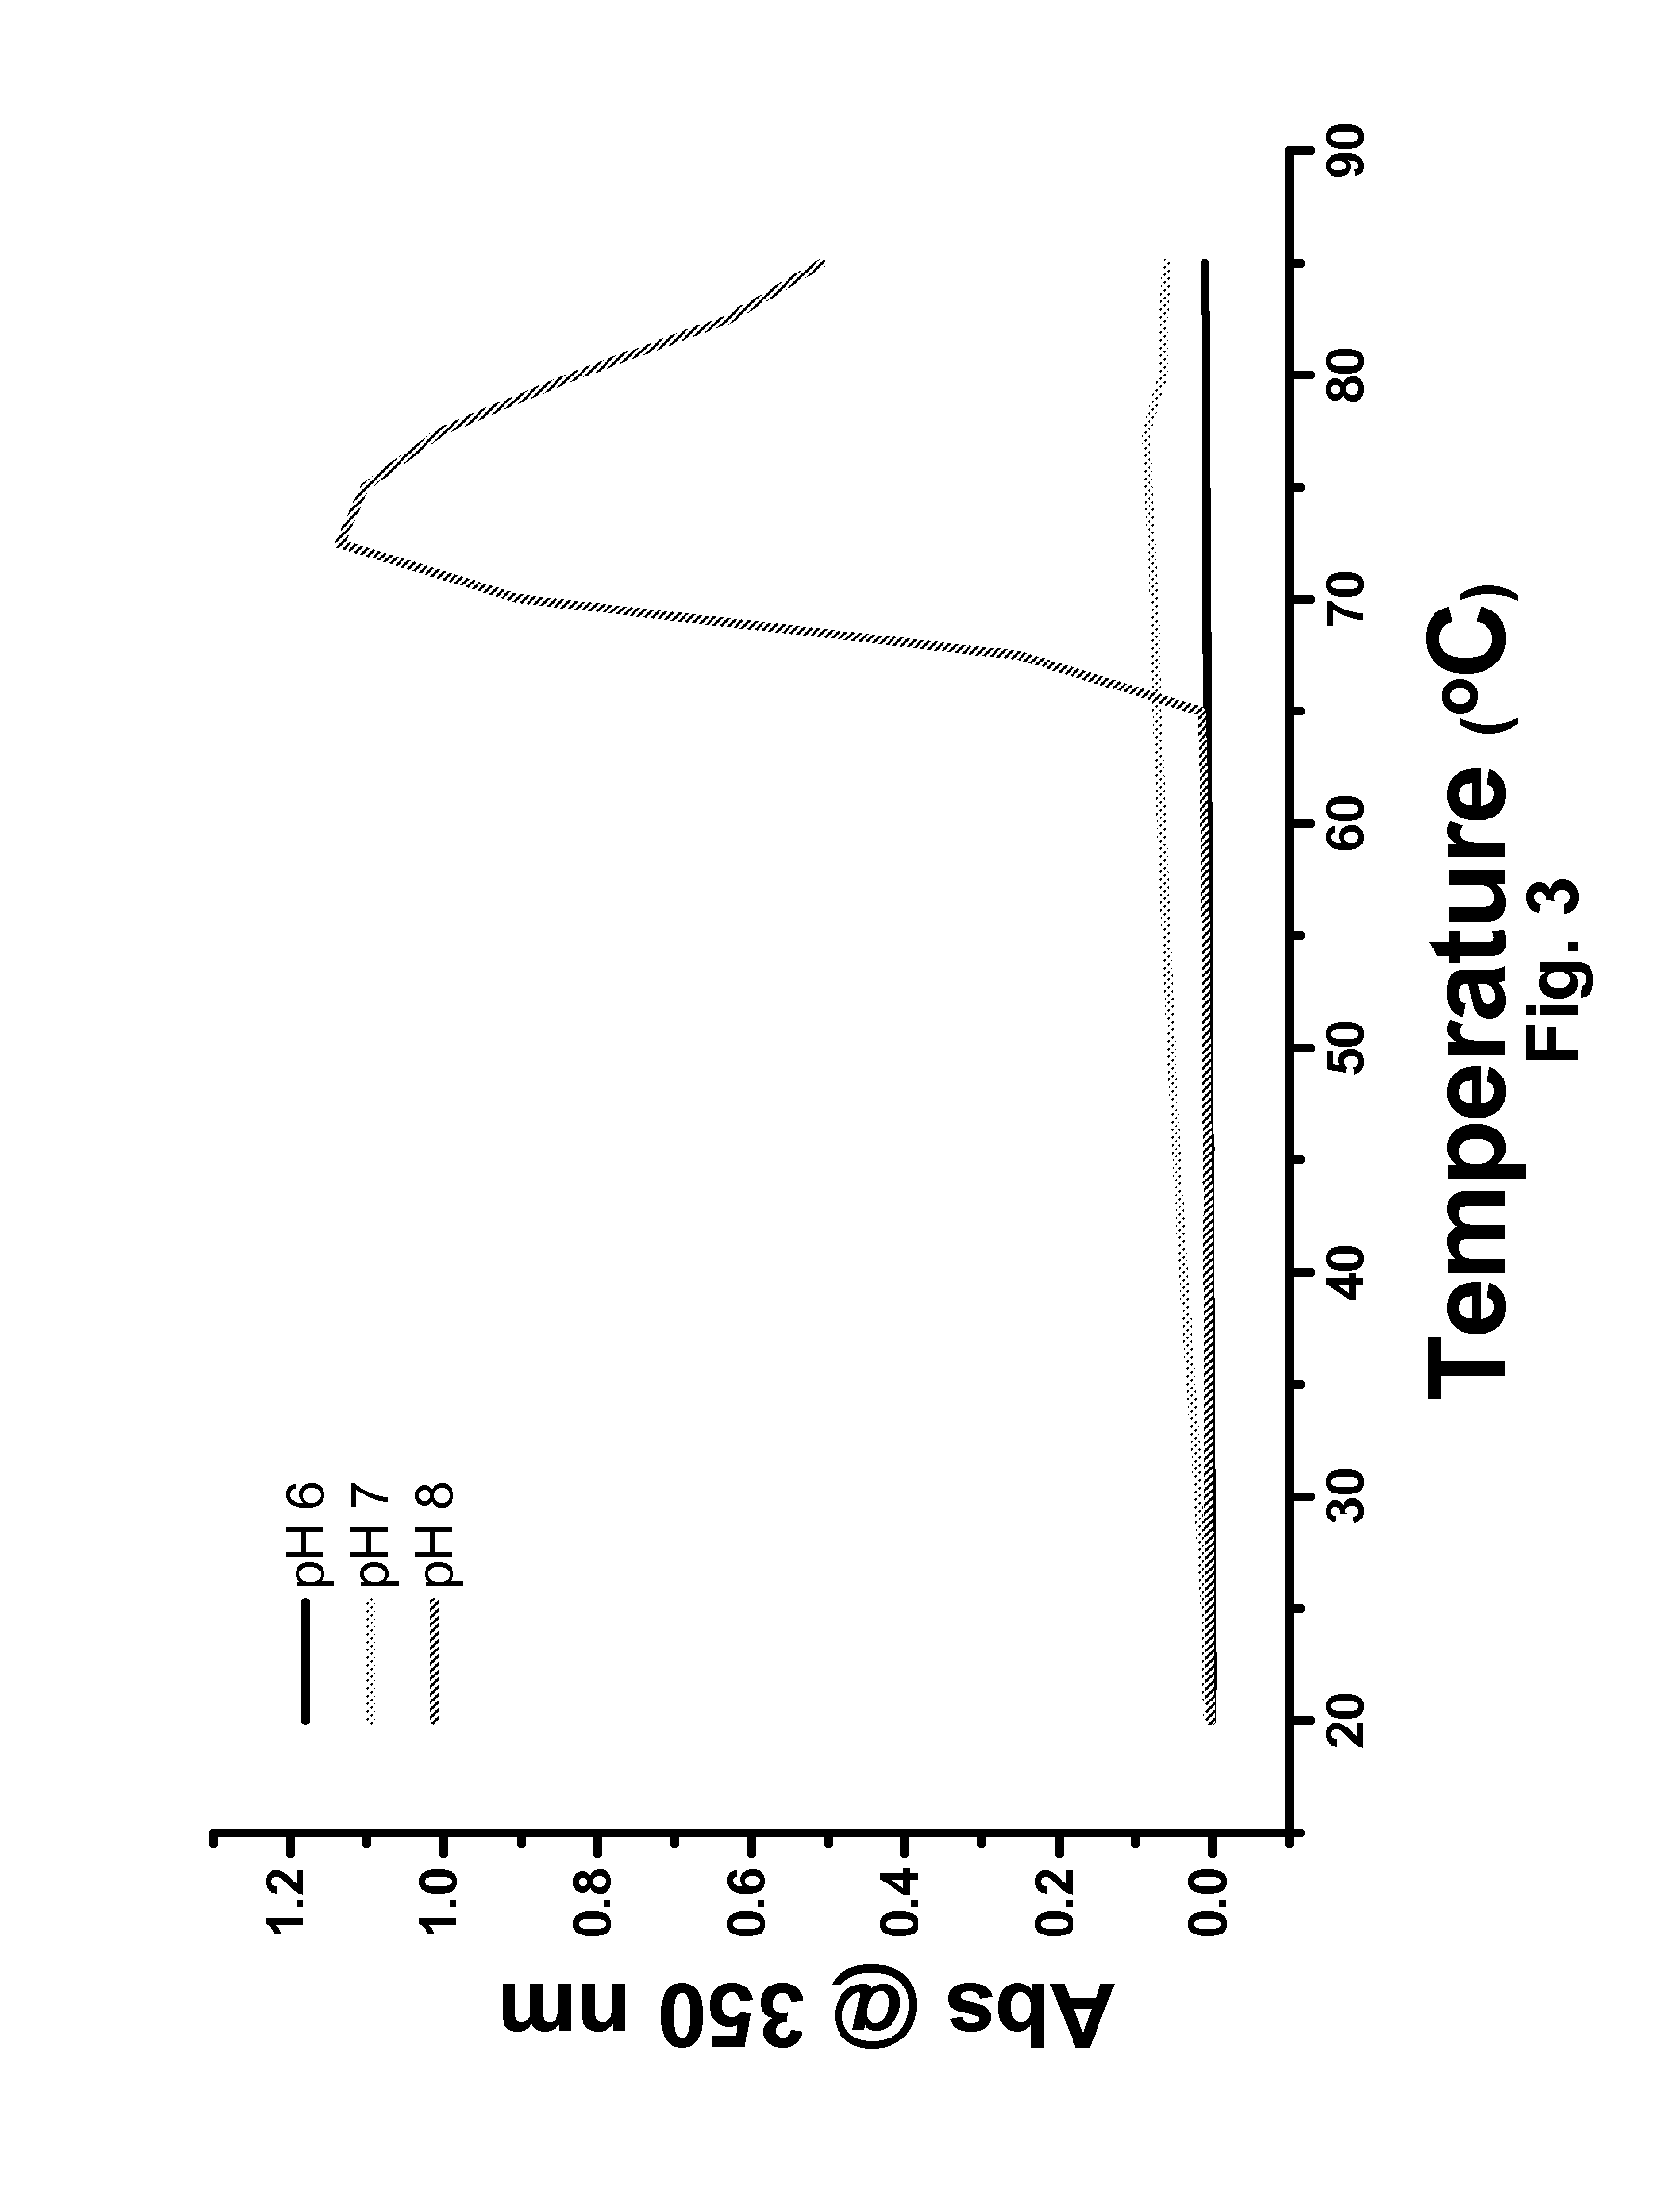 Antibody formulation